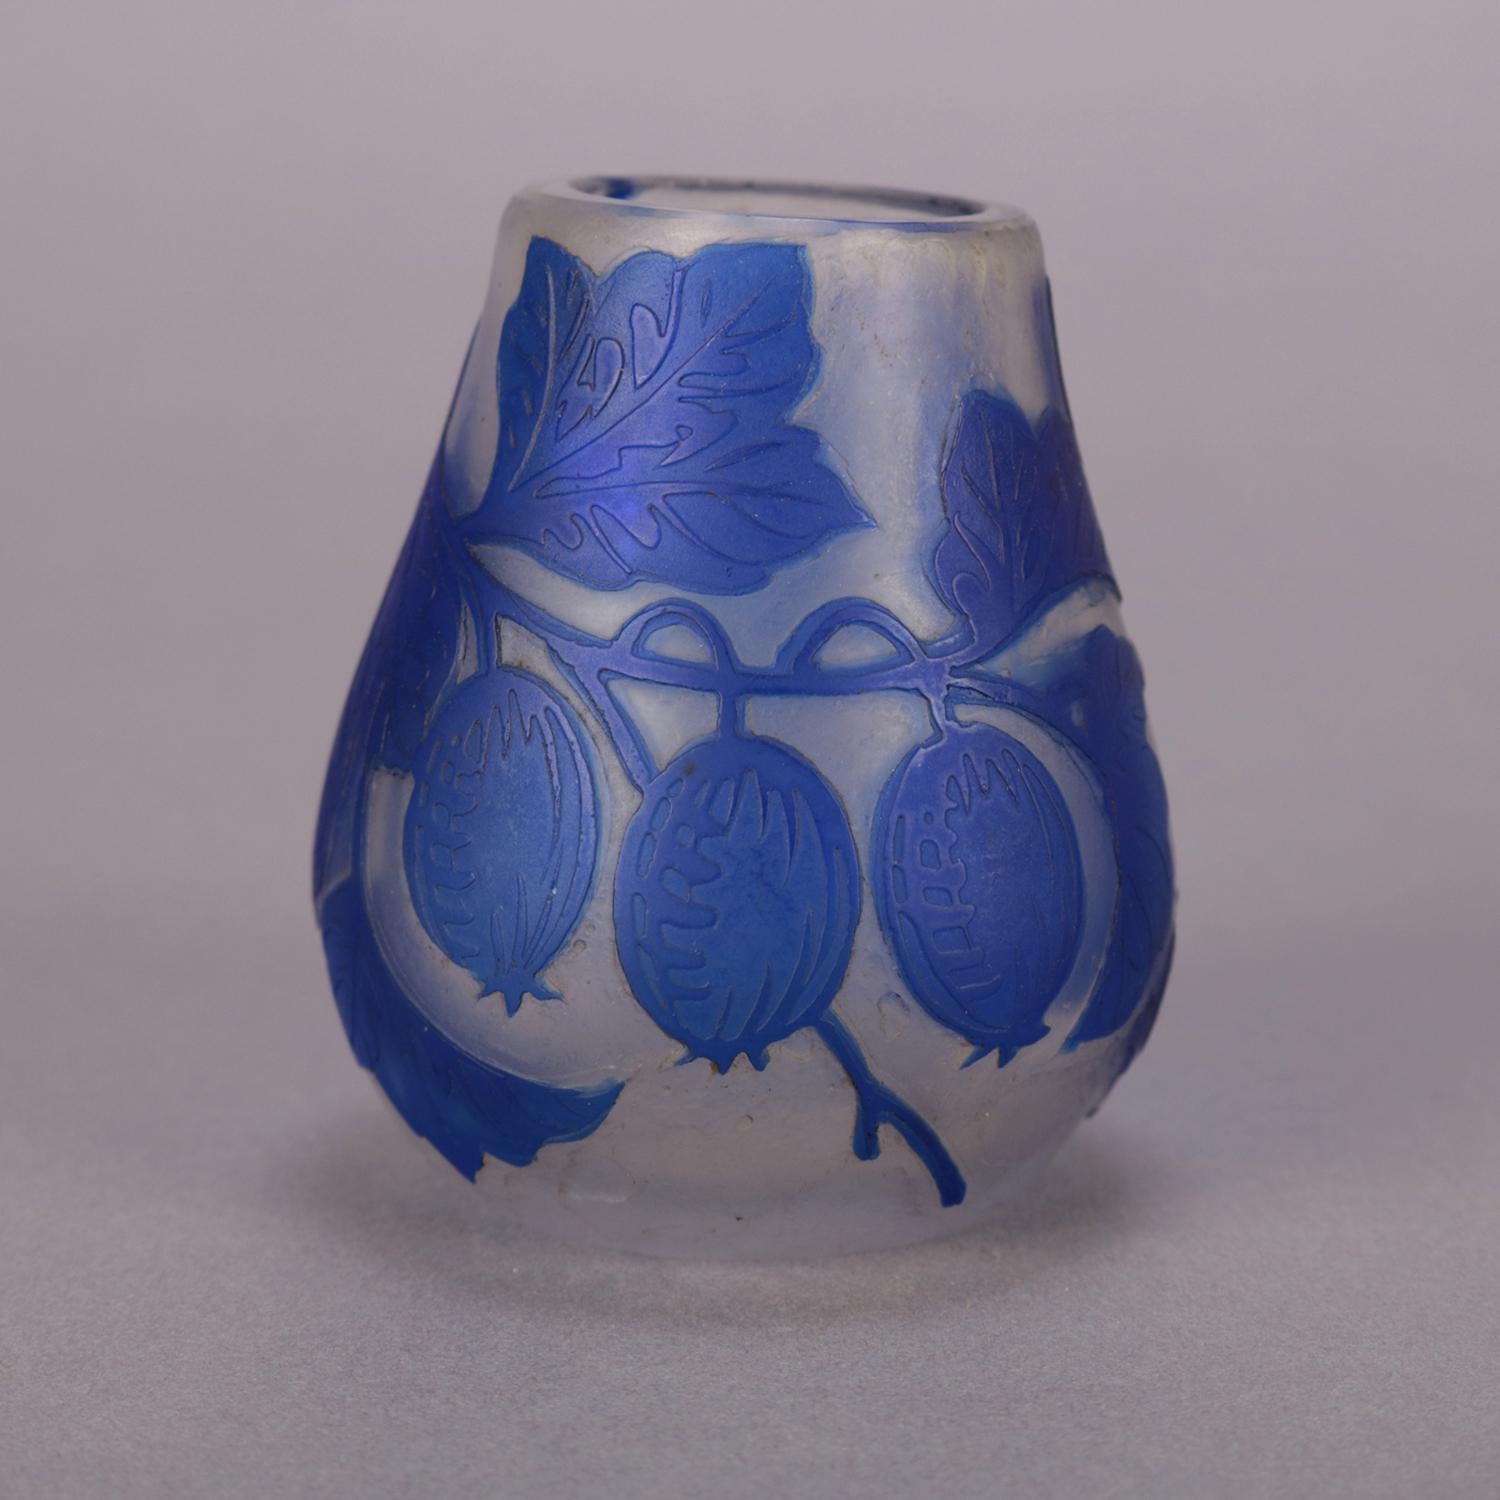 Antique Art Nouveau French Galle School art glass vase features cut back fruit and vine design in cobalt blue, circa 1920.

Measures: 3